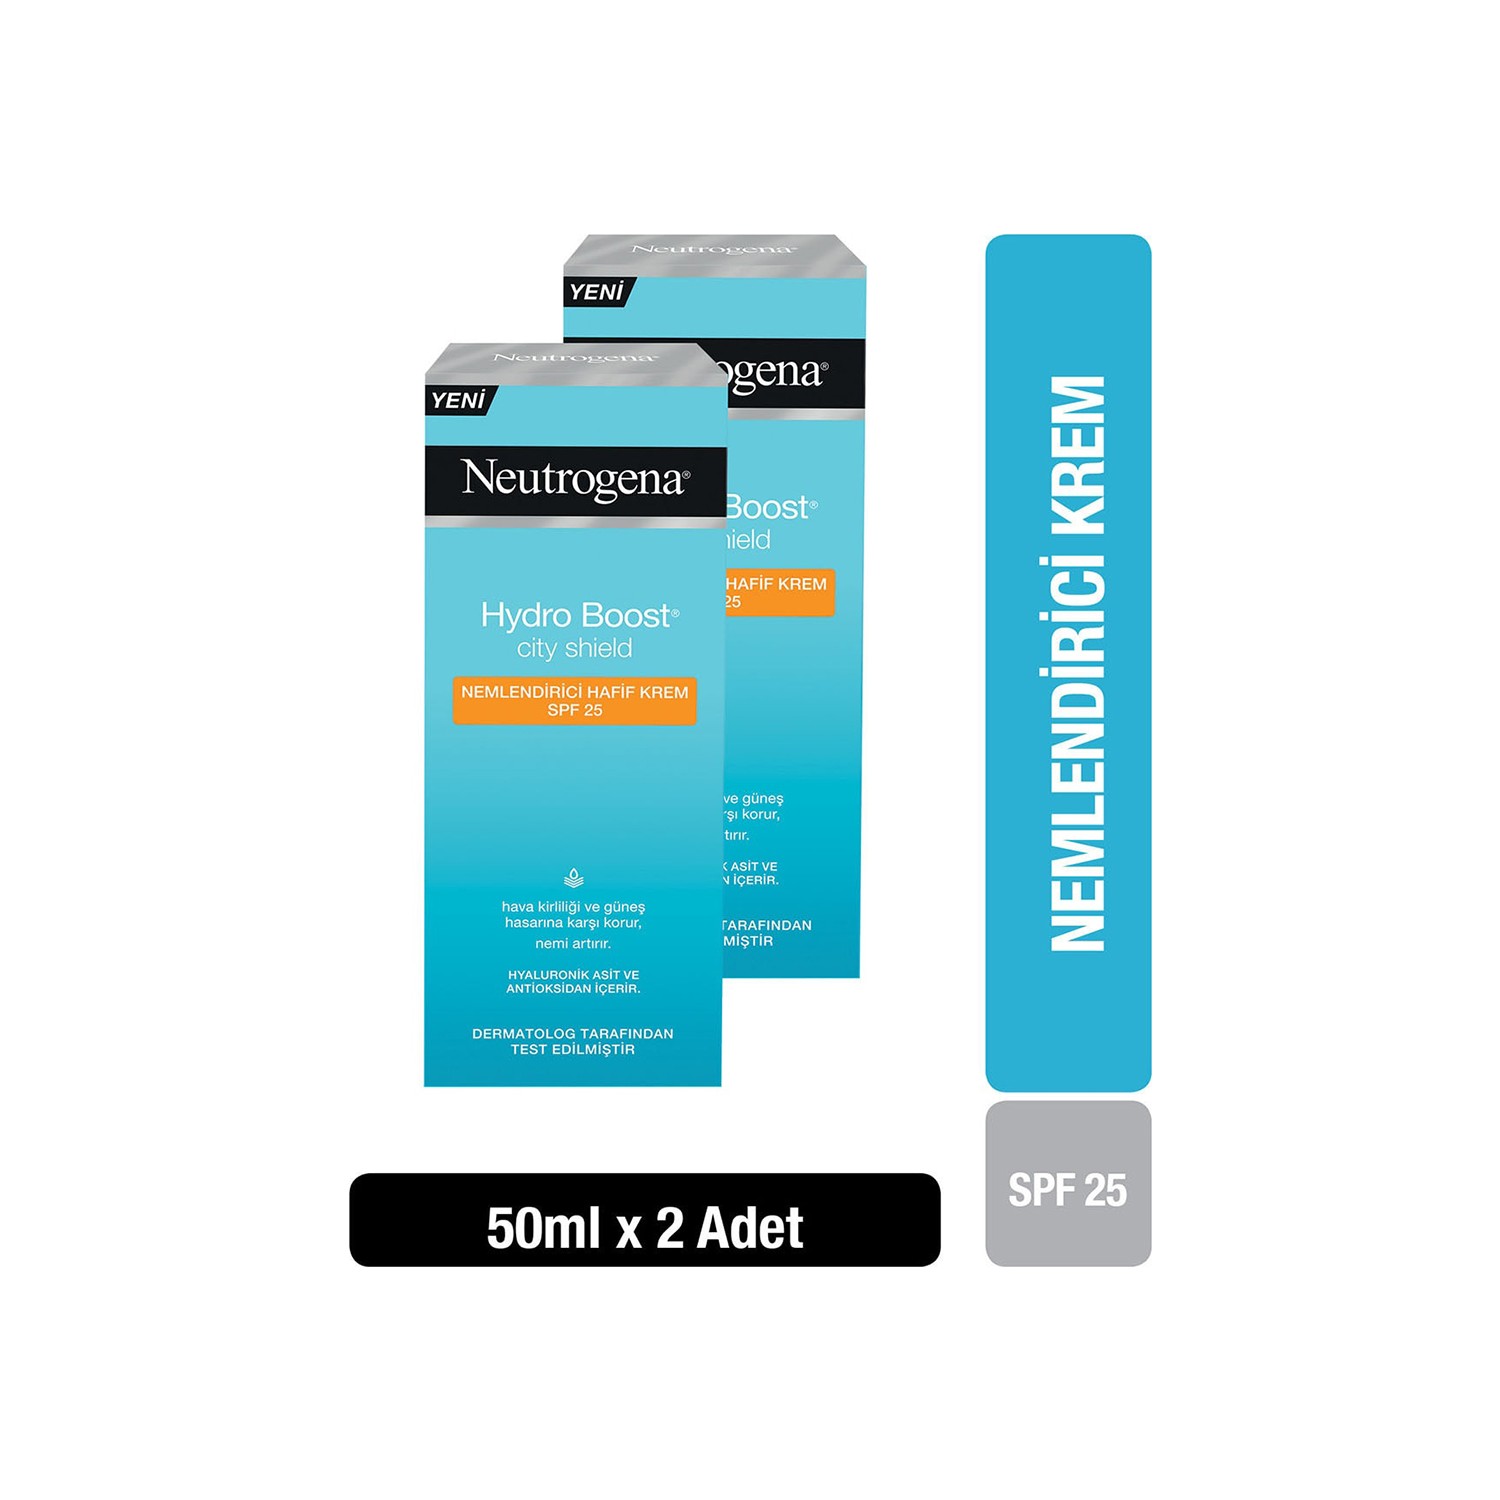 Крем Neutrogena Hydro Boost SPF25 увлажняющий, 2 упаковки по 50 мл neutrogena hydro boost увлажняющий консилер средний 40 3 4 г 0 12 унции